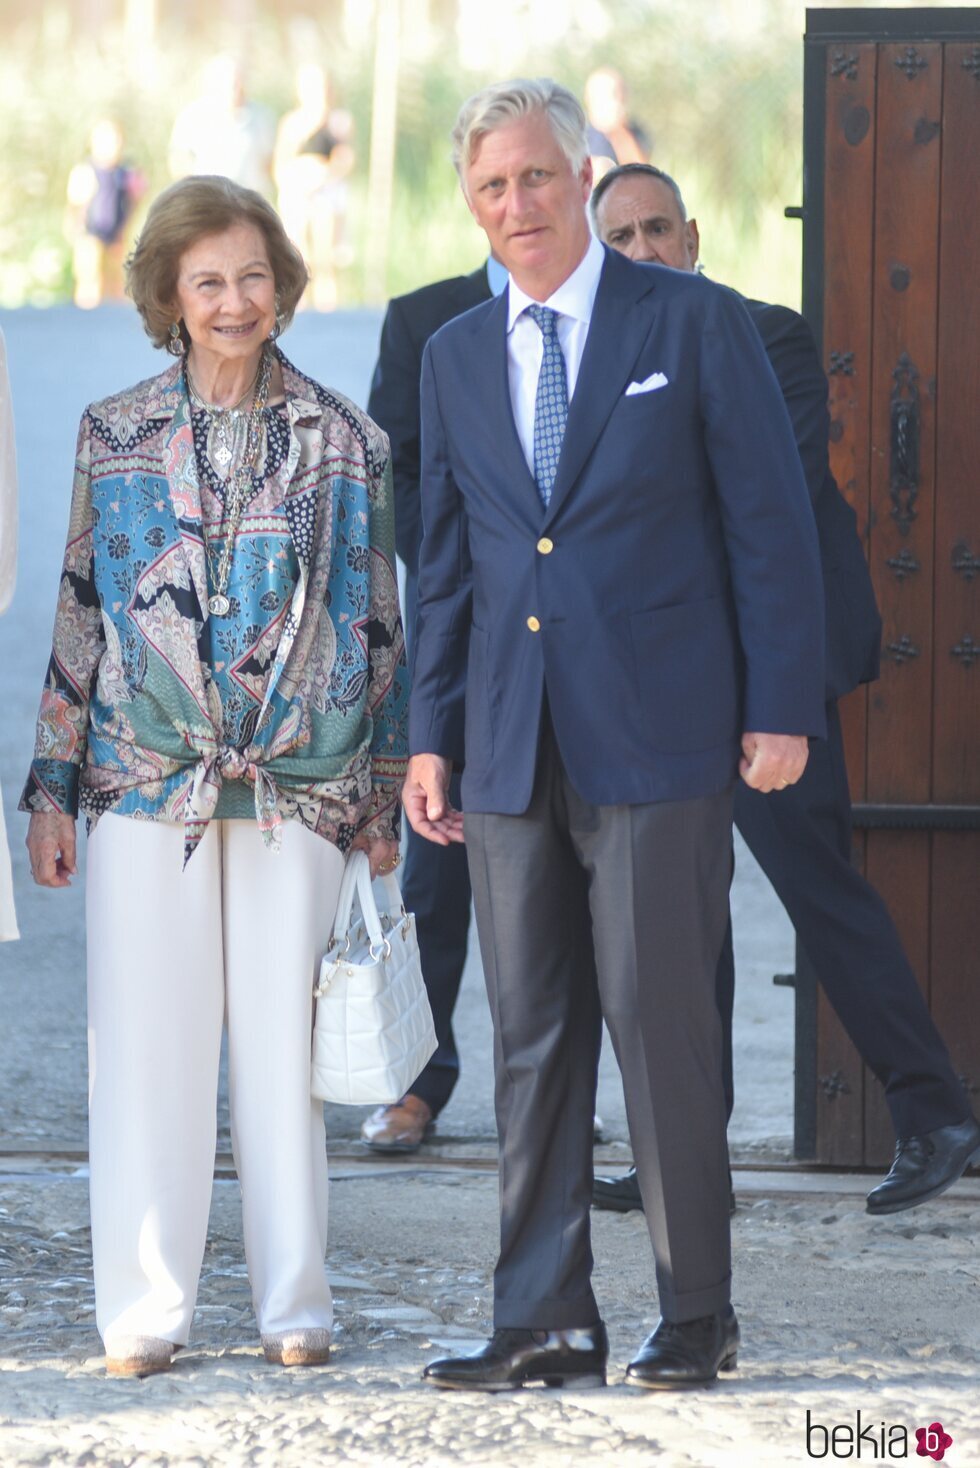 La Reina Sofía y Felipe de Bélgica en el acto por el 30 aniversario de la muerte de Balduino de Bélgica